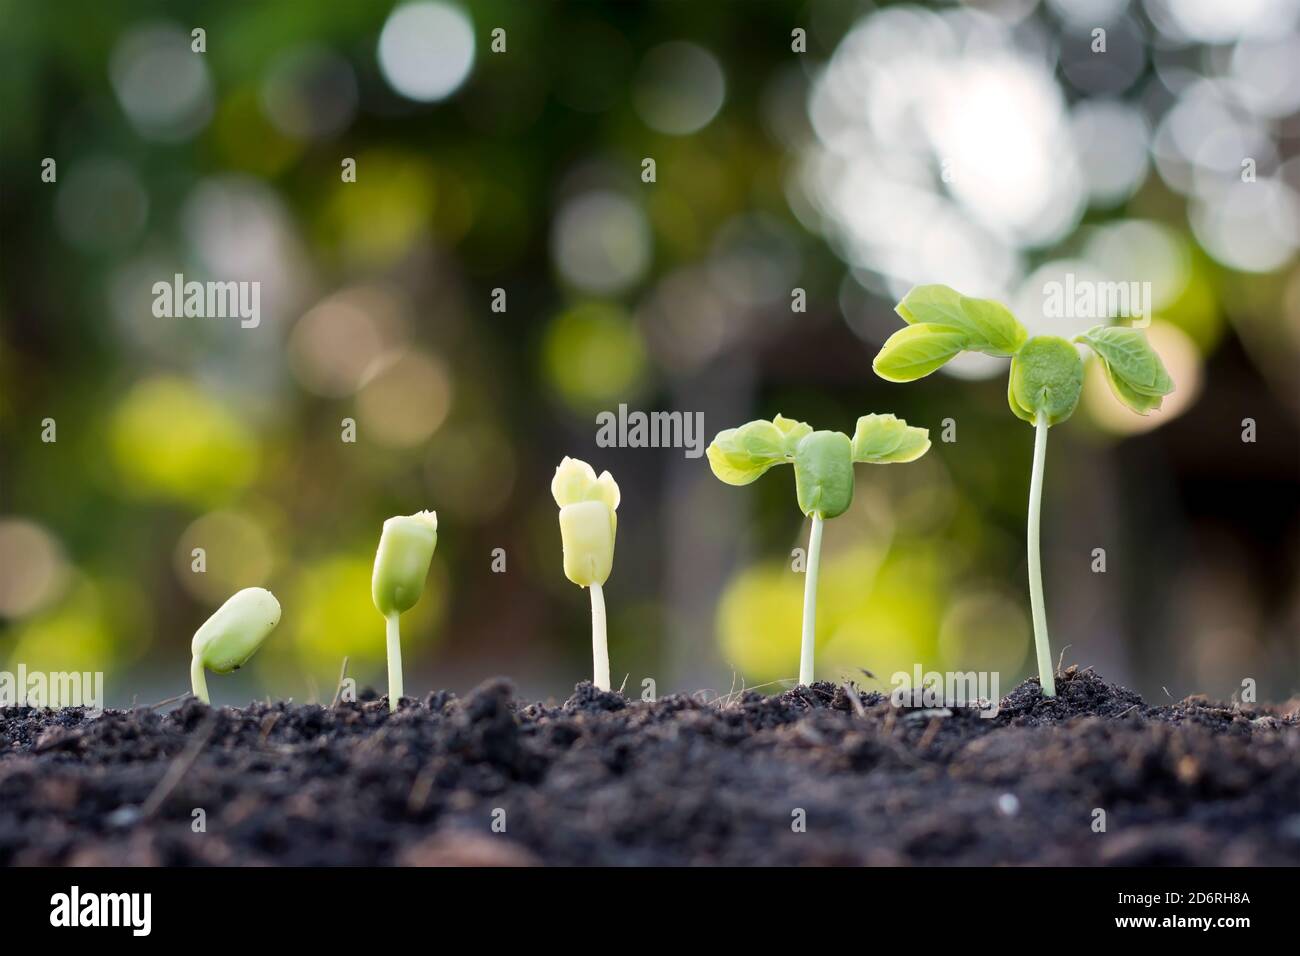 Setzlinge wachsen aus fruchtbarem Boden, einschließlich der Entwicklung des Pflanzenwachstums von Samen zu Setzlingen. Konzept der Ökologie und Landwirtschaft. Stockfoto